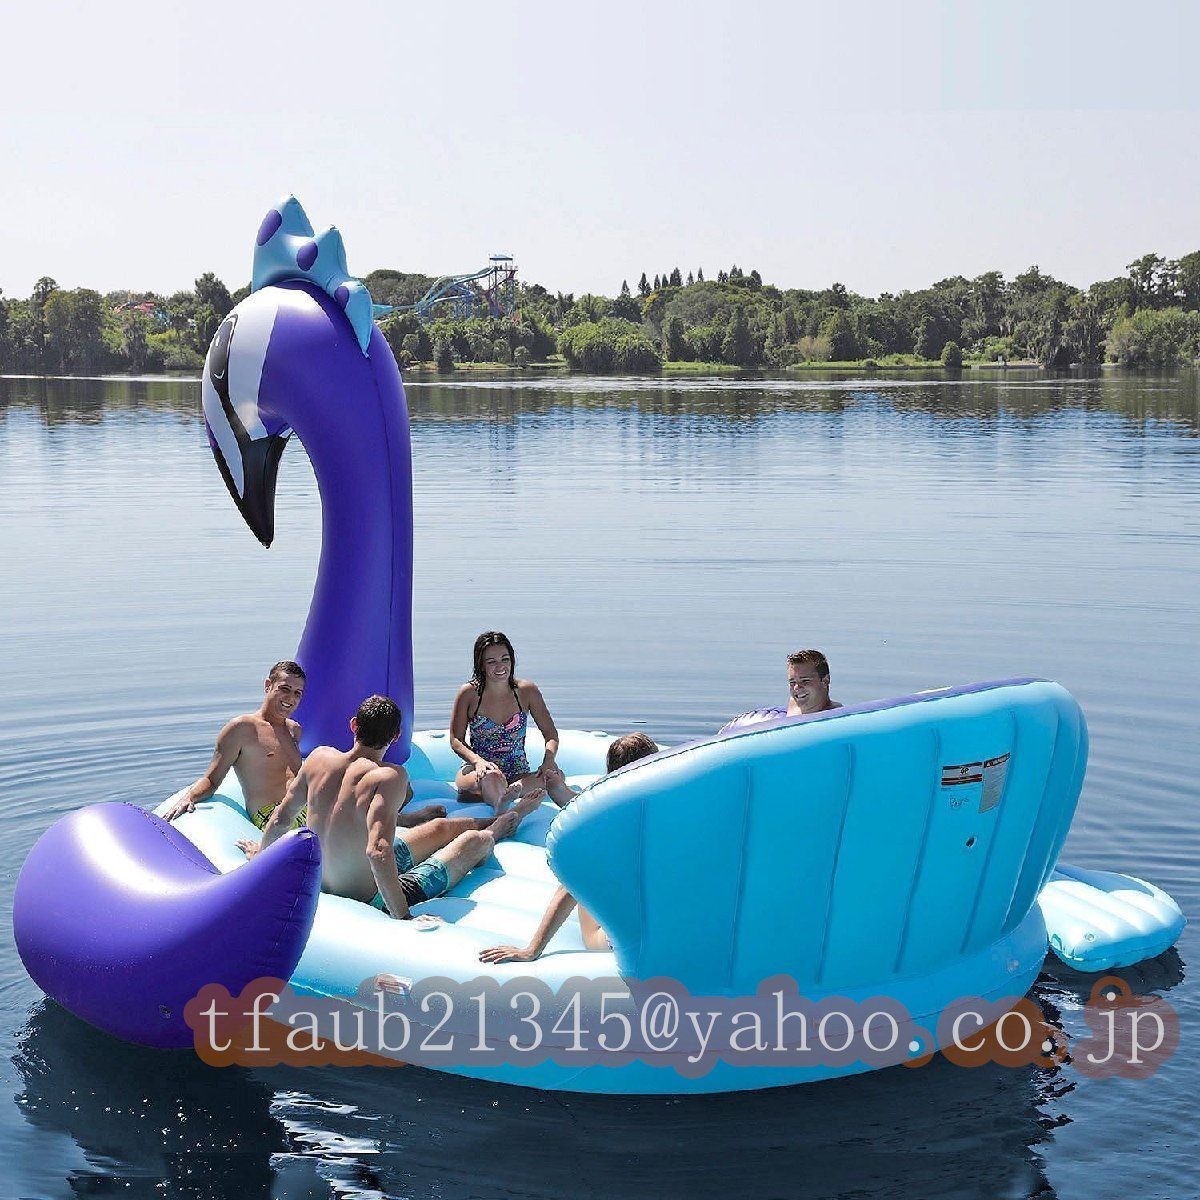 「【ケーリーフショップ】耐荷重 水上 超ビッグ インフレータブルユニコーン 6人用 フロートボート」の画像2